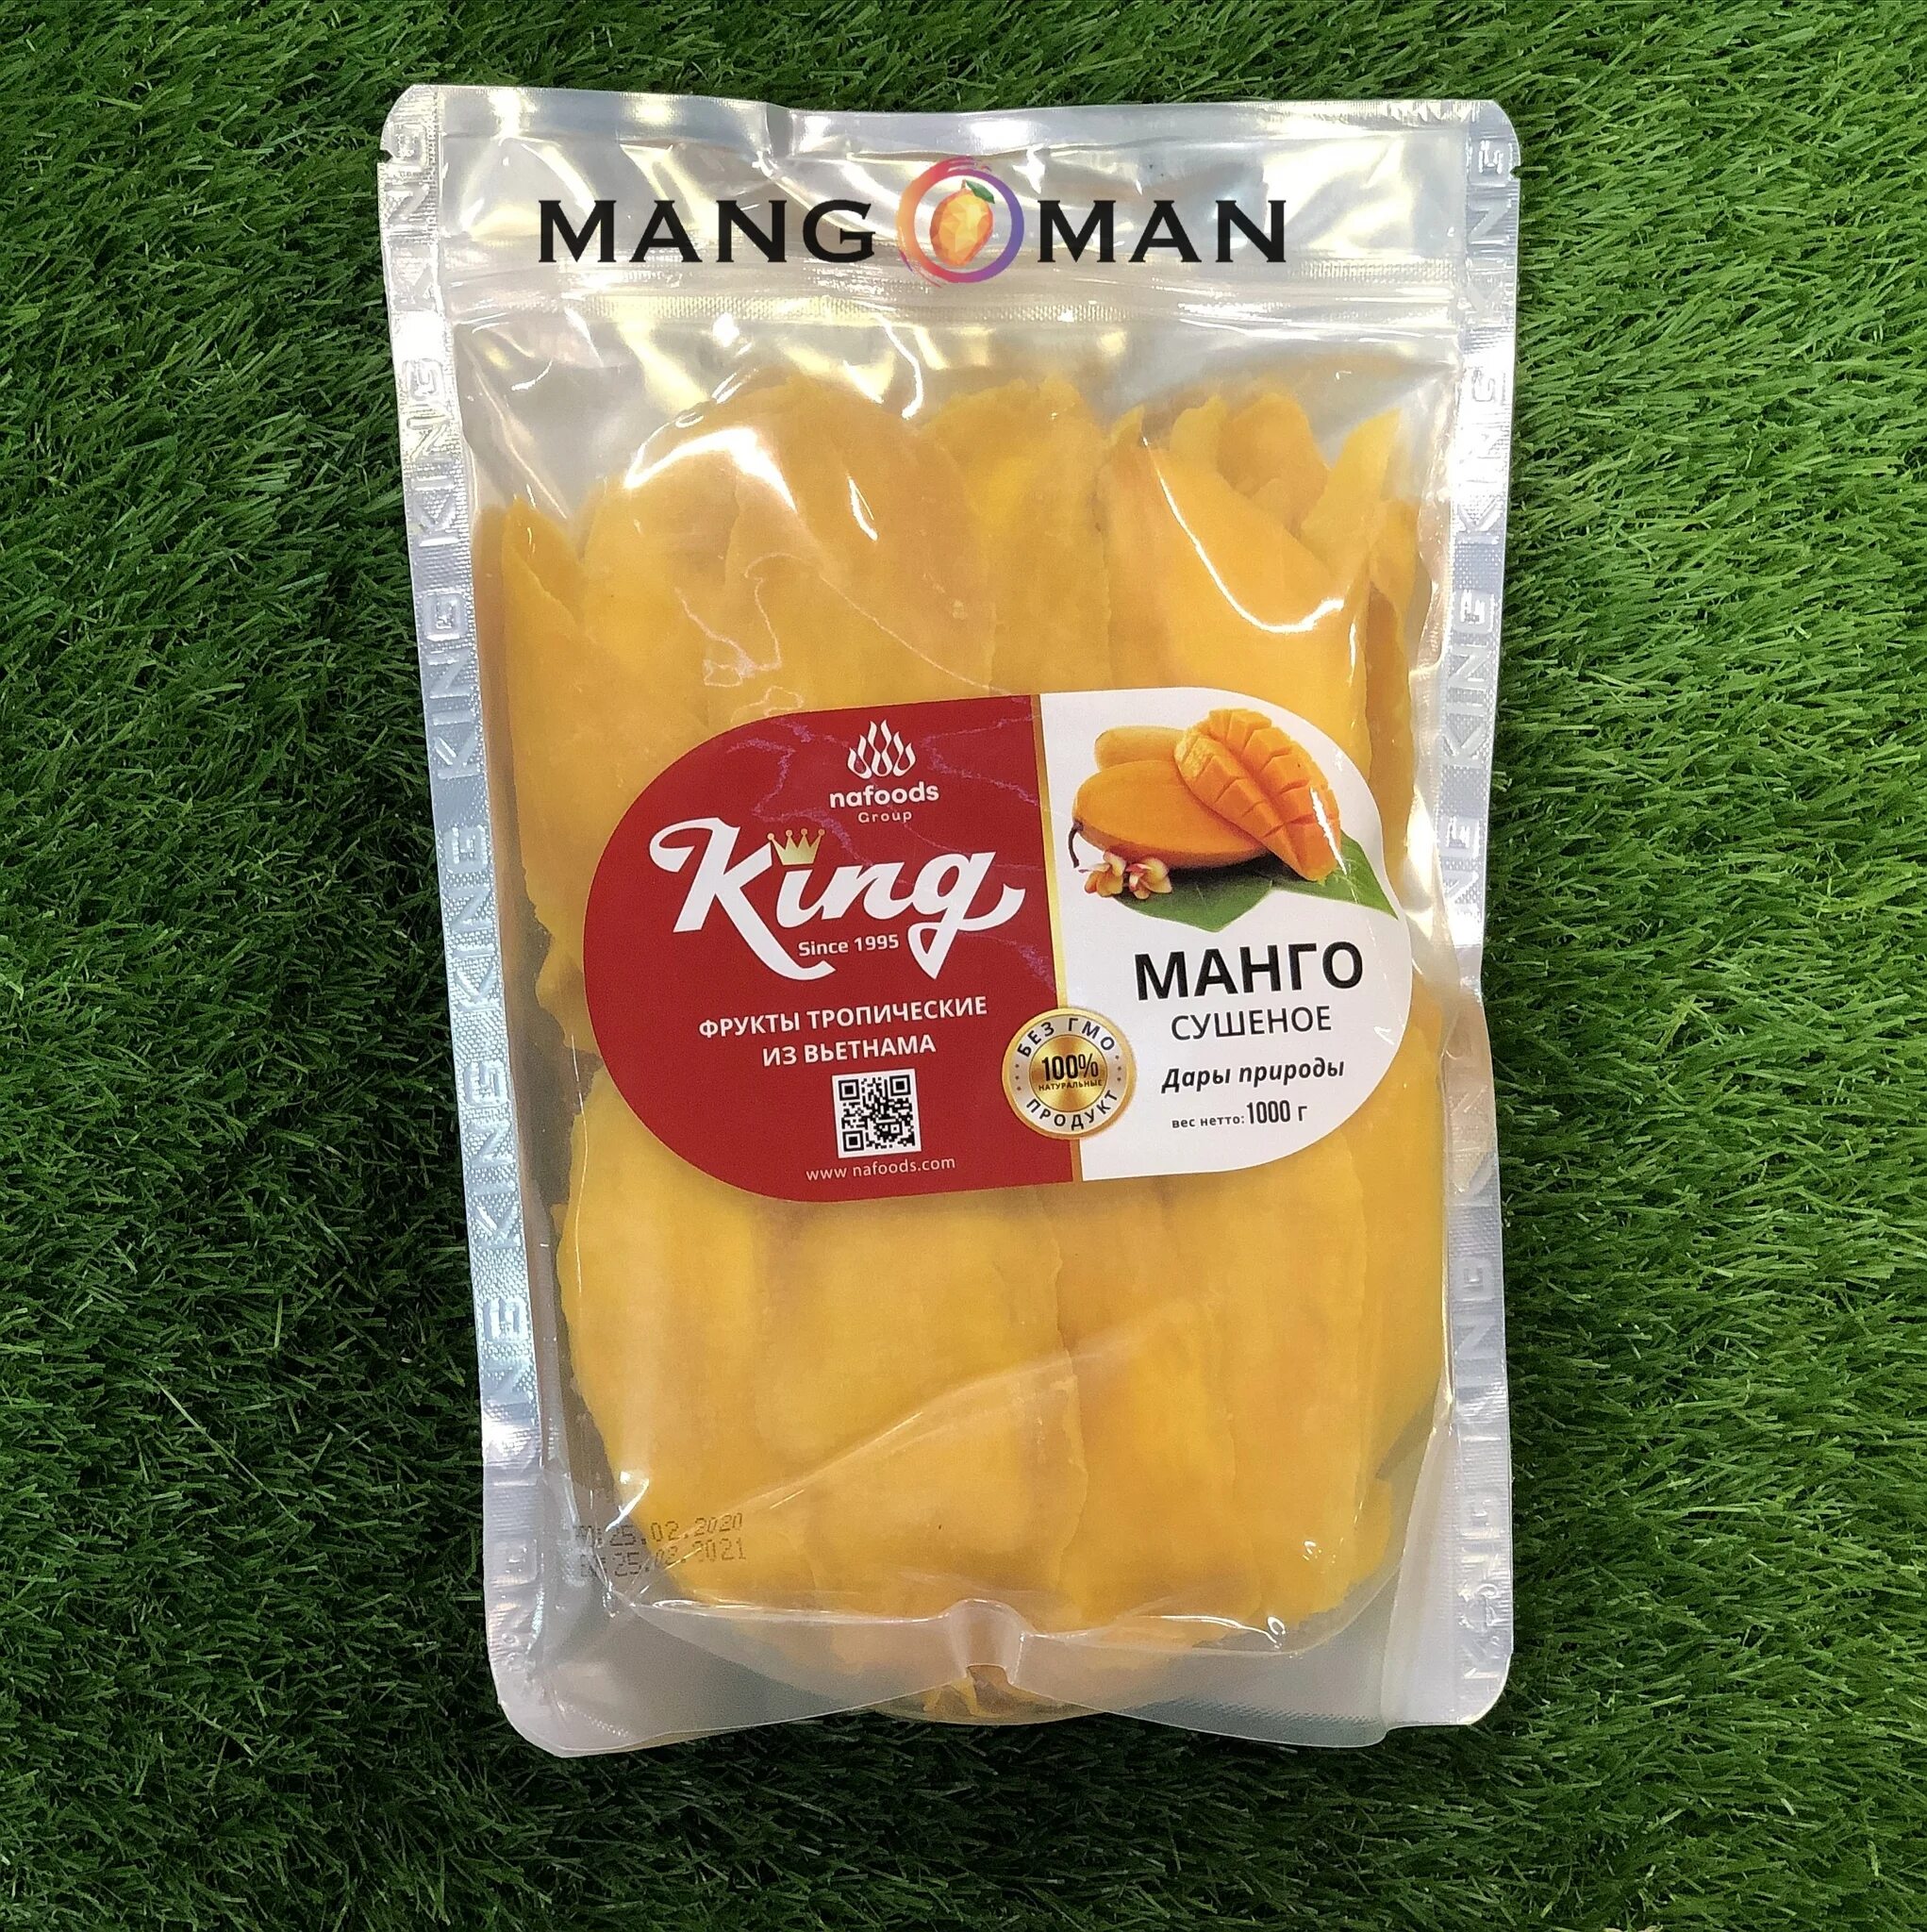 Сколько стоит кг манго. Сушеное манго King 500 гр.. Манго King сушеное, 1 кг. Манго сушеное Вьетнам 1кг. Манго сушеное King Вьетнам.